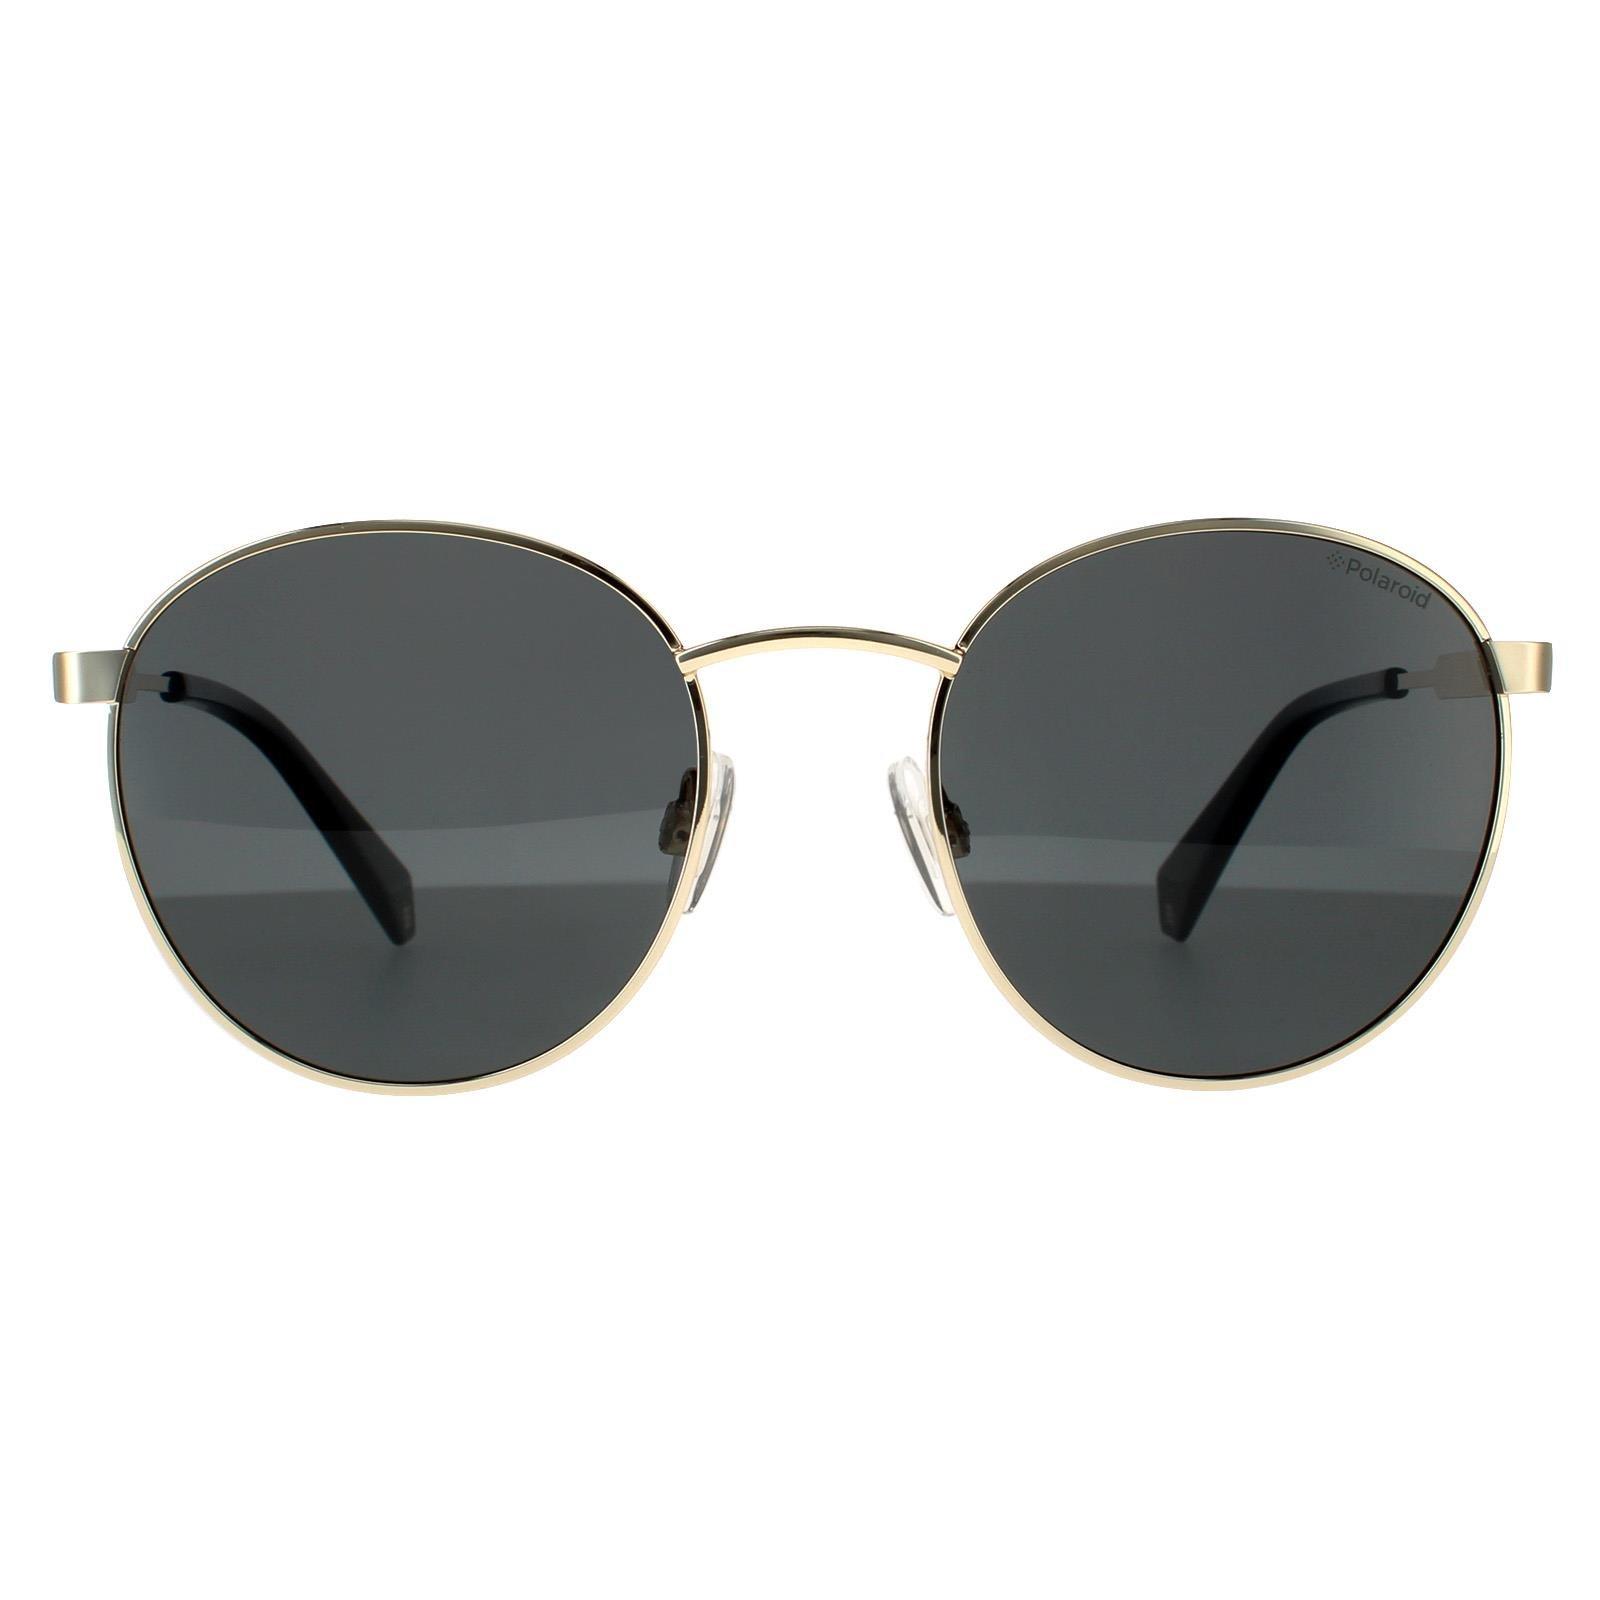 Круглые золотисто-серые серые поляризованные солнцезащитные очки Polaroid, золото polaroid kids pld 8053 s 9ht m9